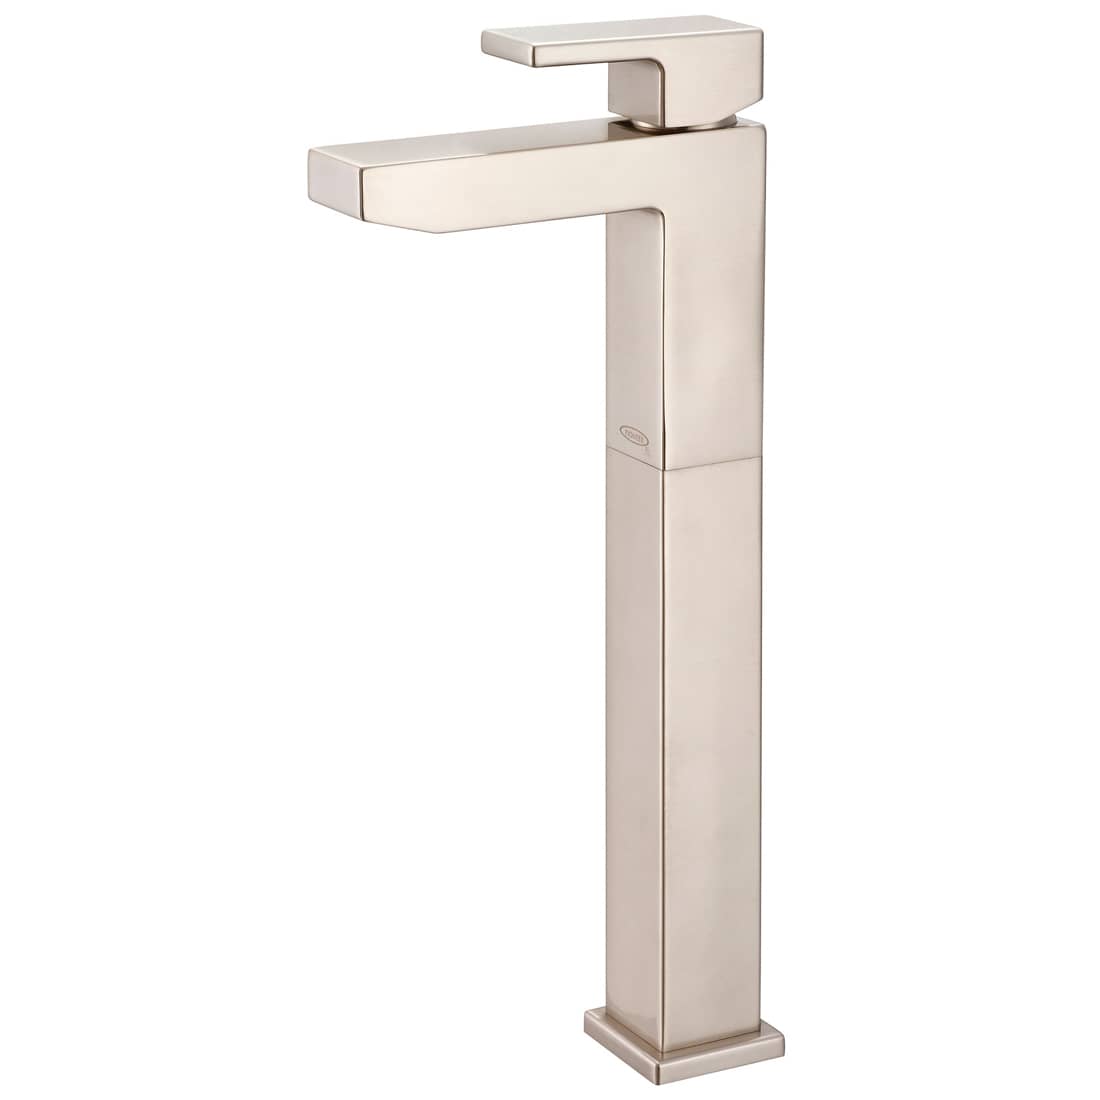 Mod Single Handle Bathroom Faucet Model# 3MO168